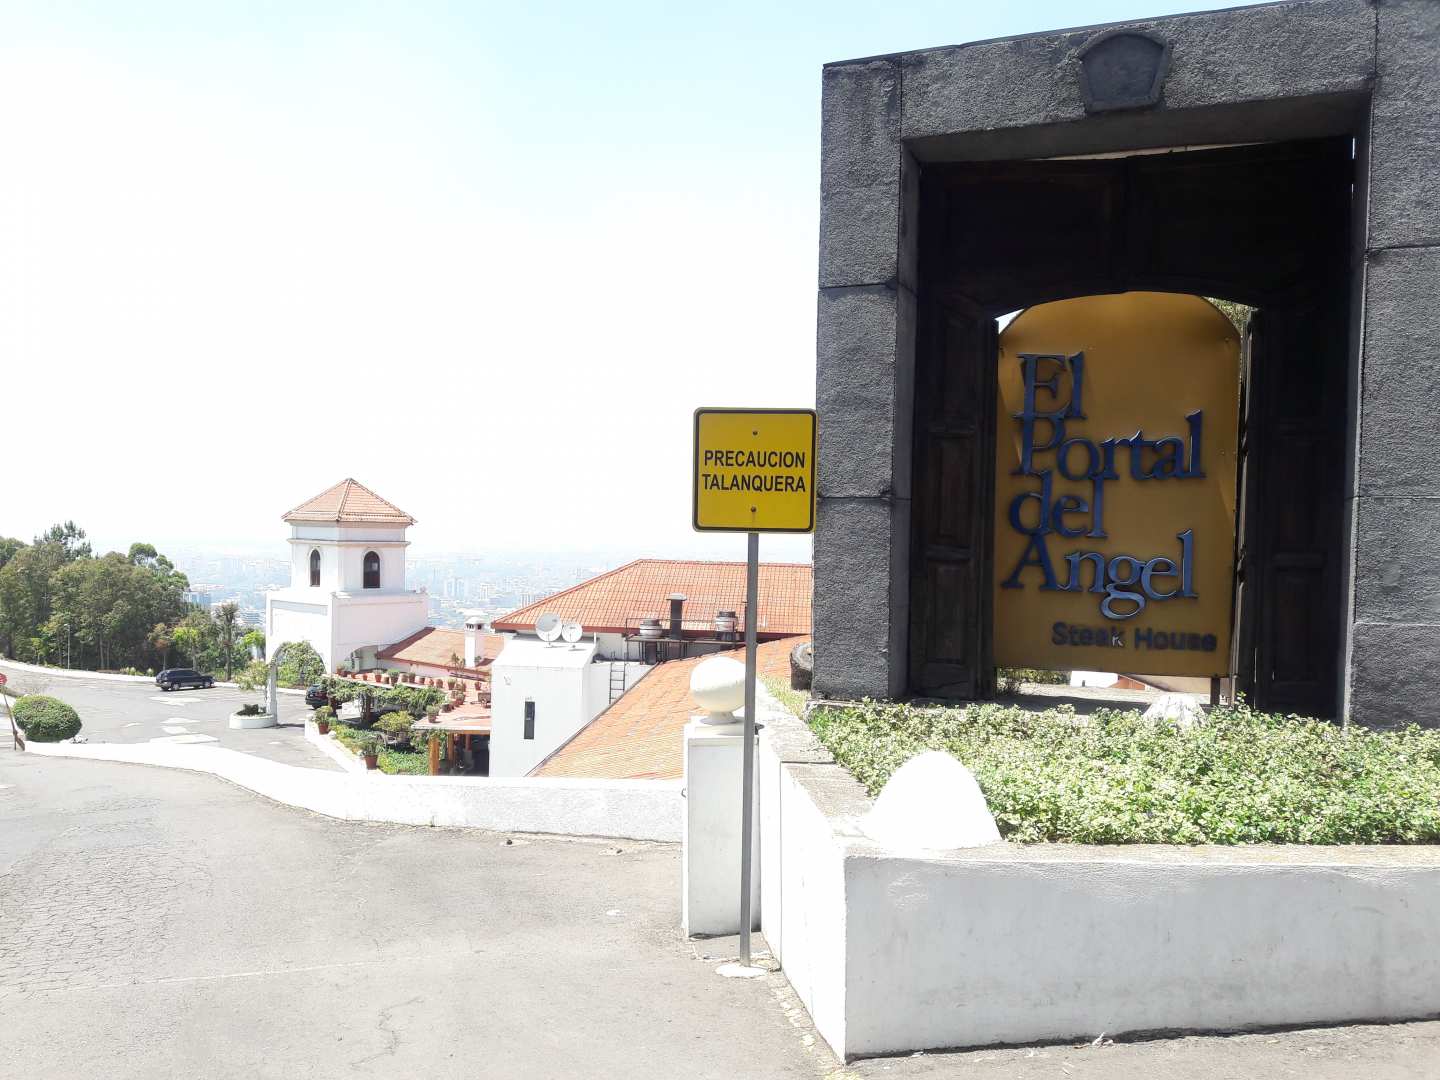 El Portal del Angel (Carretera al Salvador)